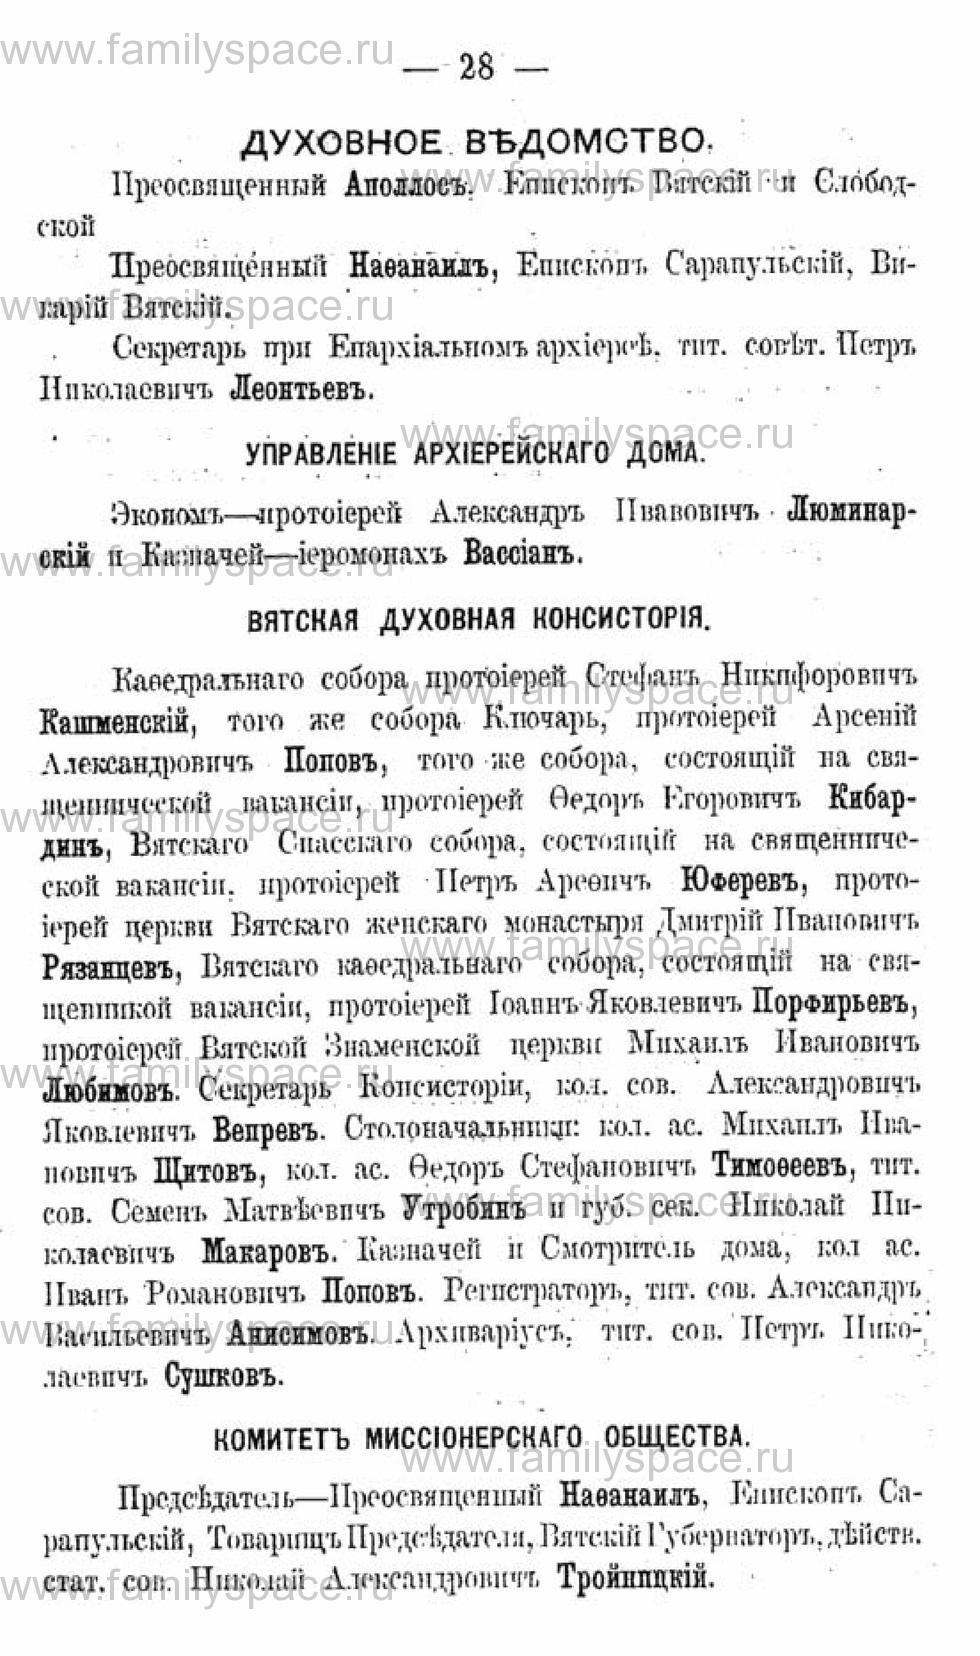 Поиск по фамилии - Календарь Вятской губернии - 1880, страница 3028